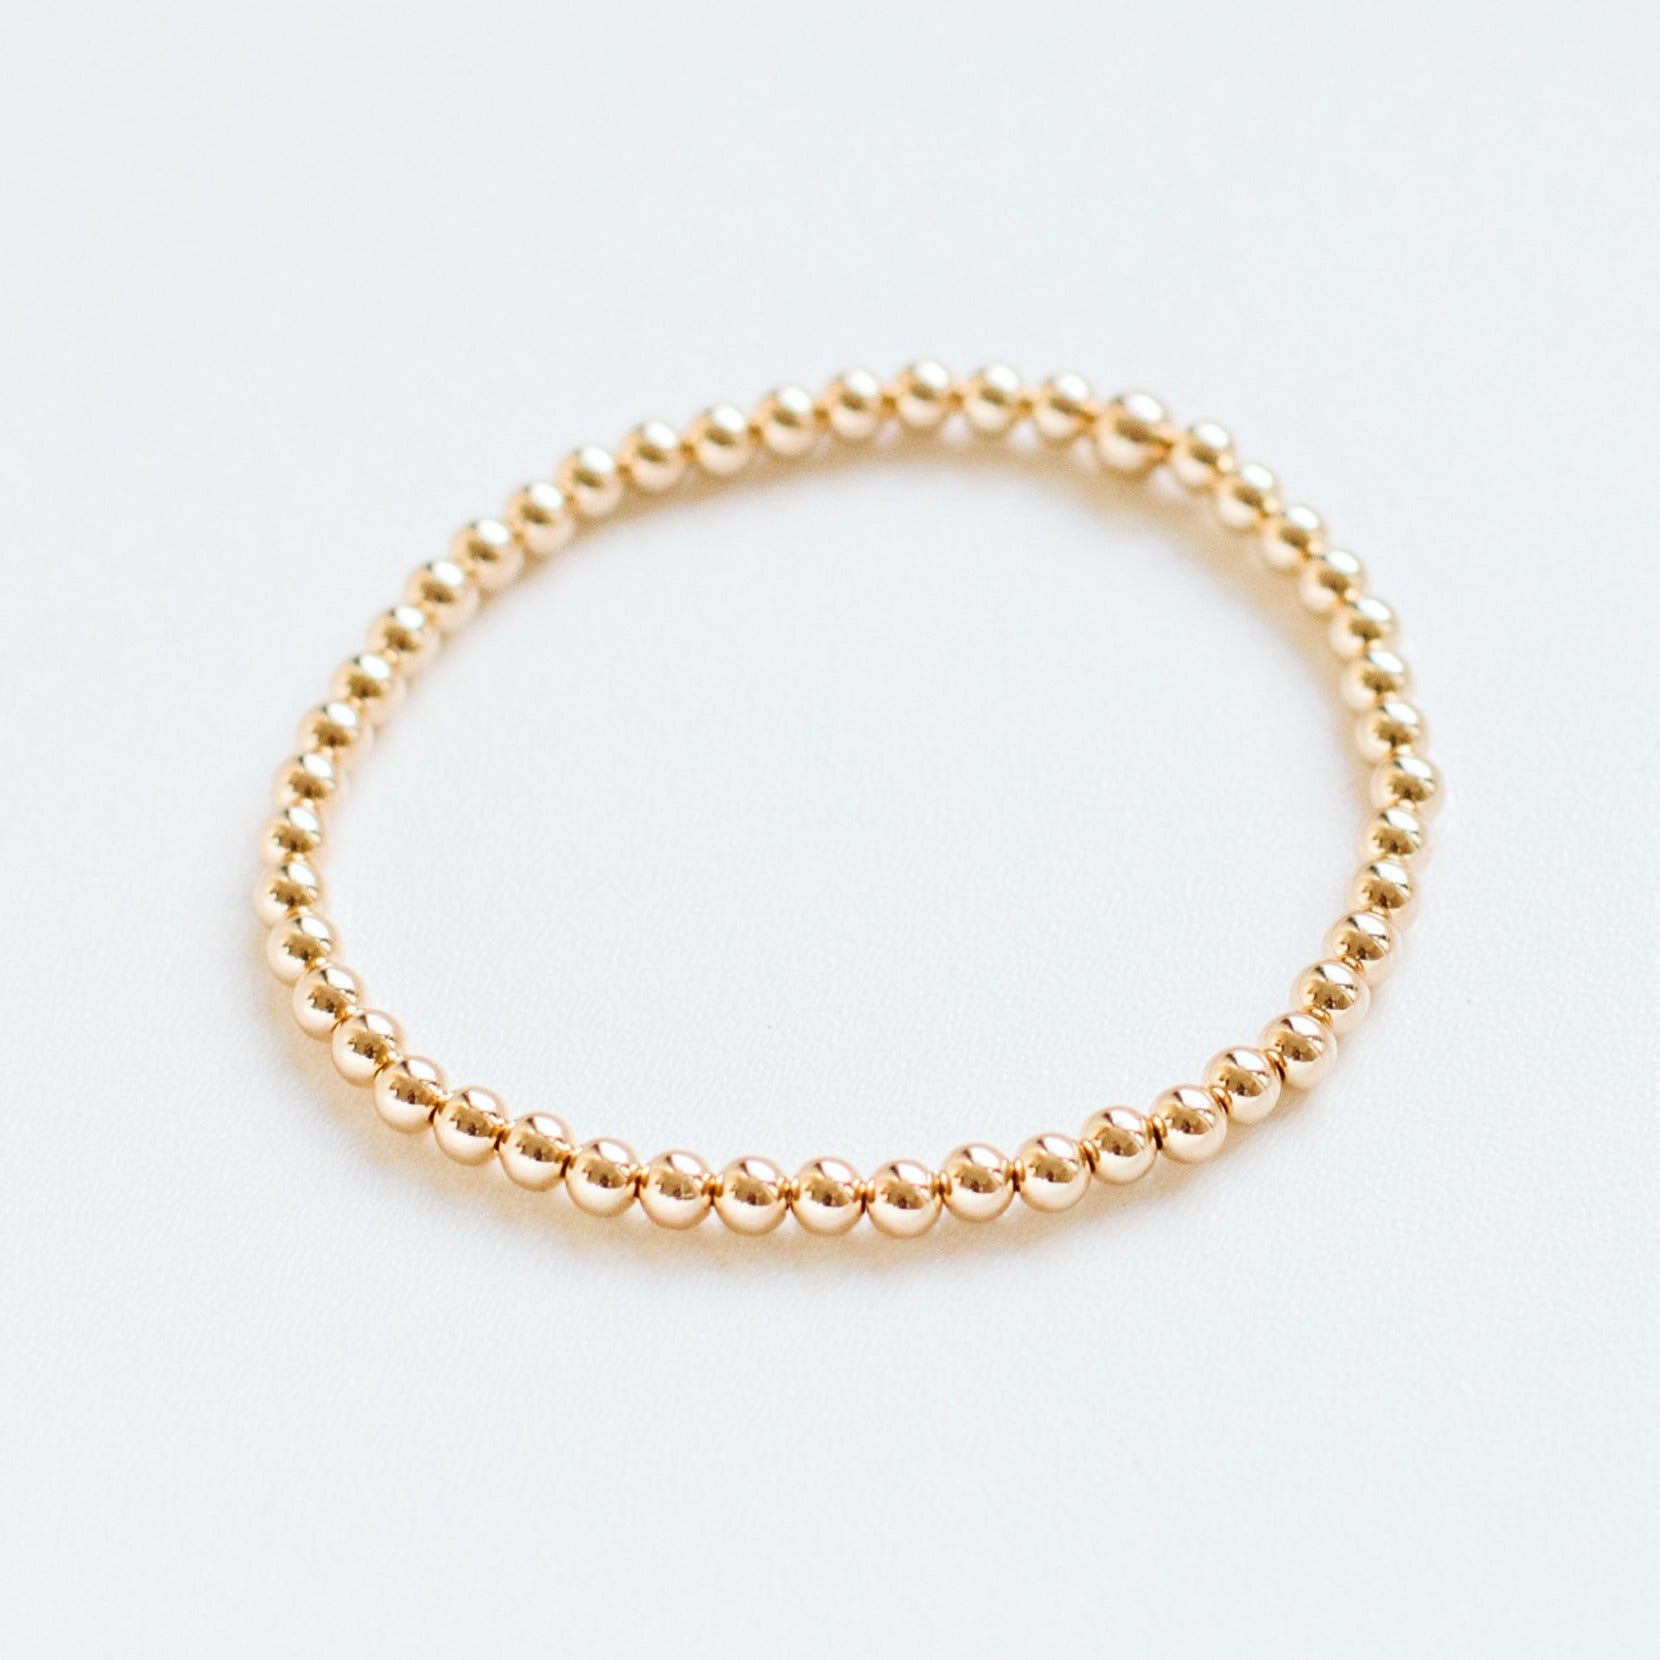 4mm 14k gold-filled bead bracelet 